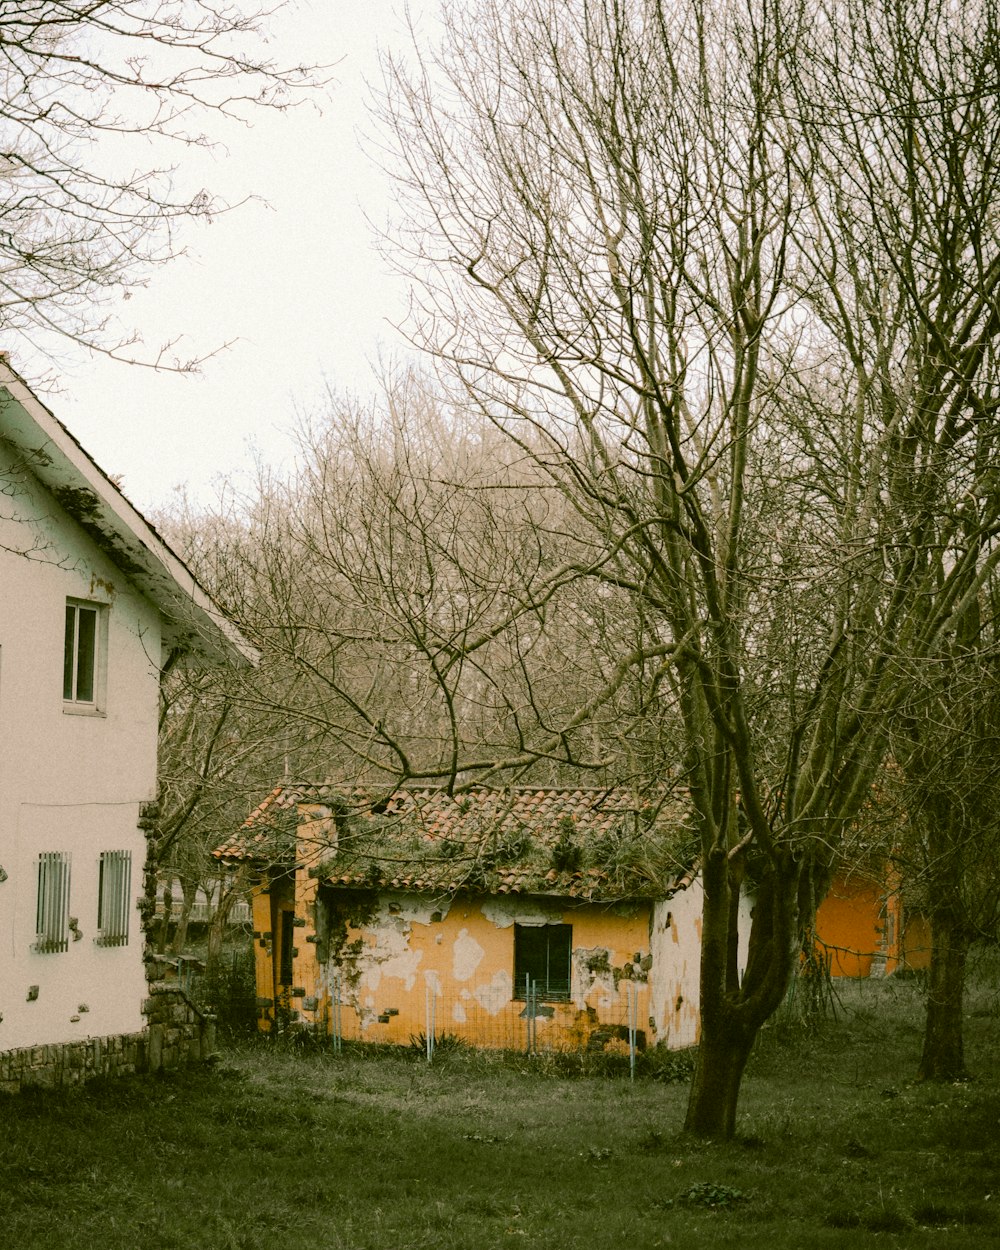 Una vecchia casa fatiscente in mezzo a un campo